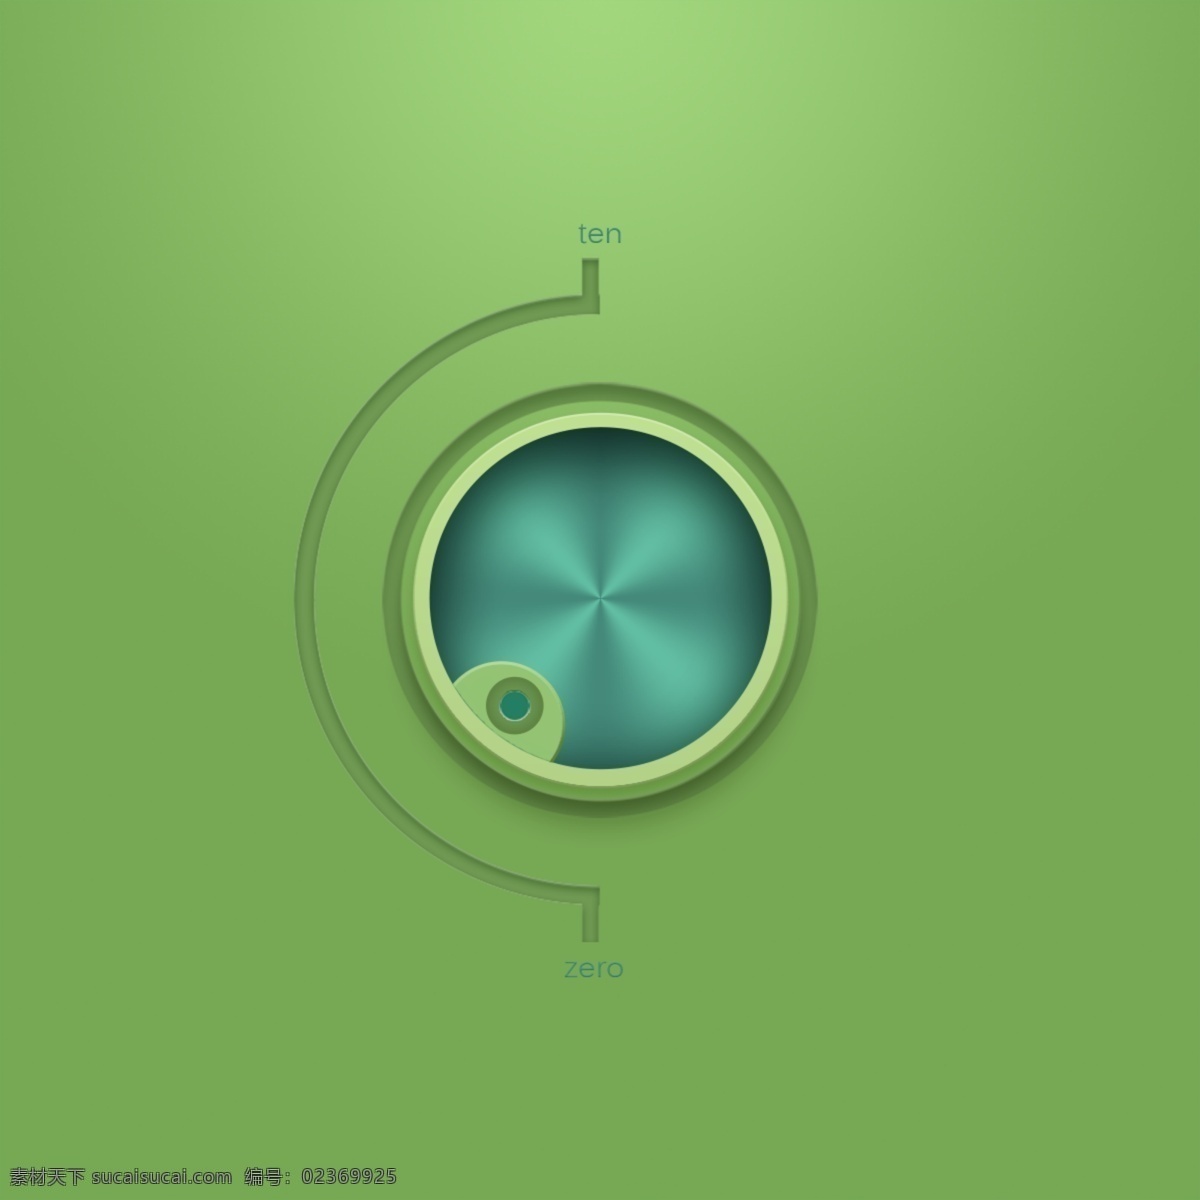 原创音乐 icon 图标 绿色 ui小图标 绿色小图标 图标设计 小清新 音乐 绿色icon